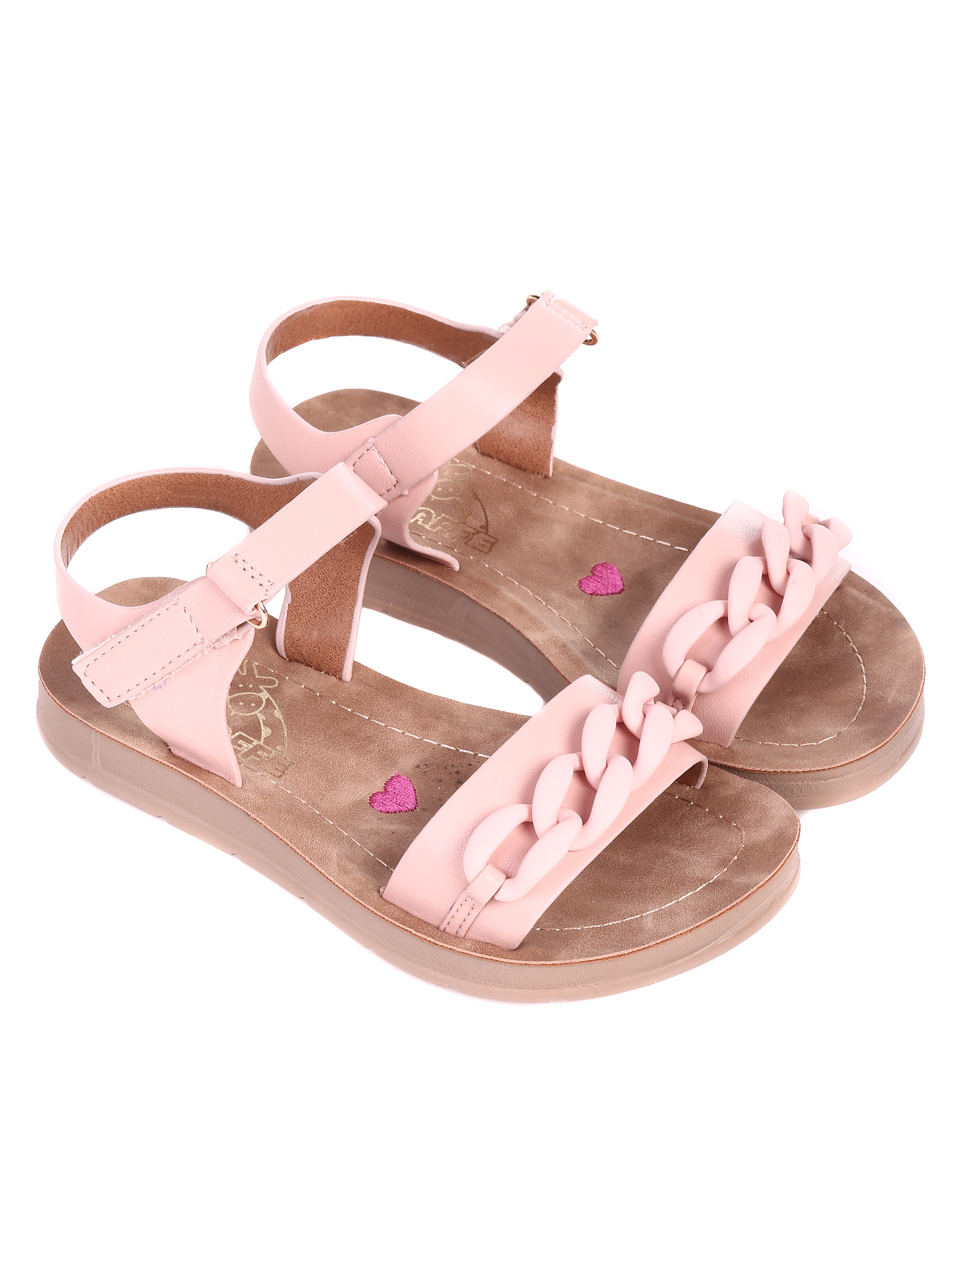 Ежедневни детски сандали в розово 17F-22207 pink